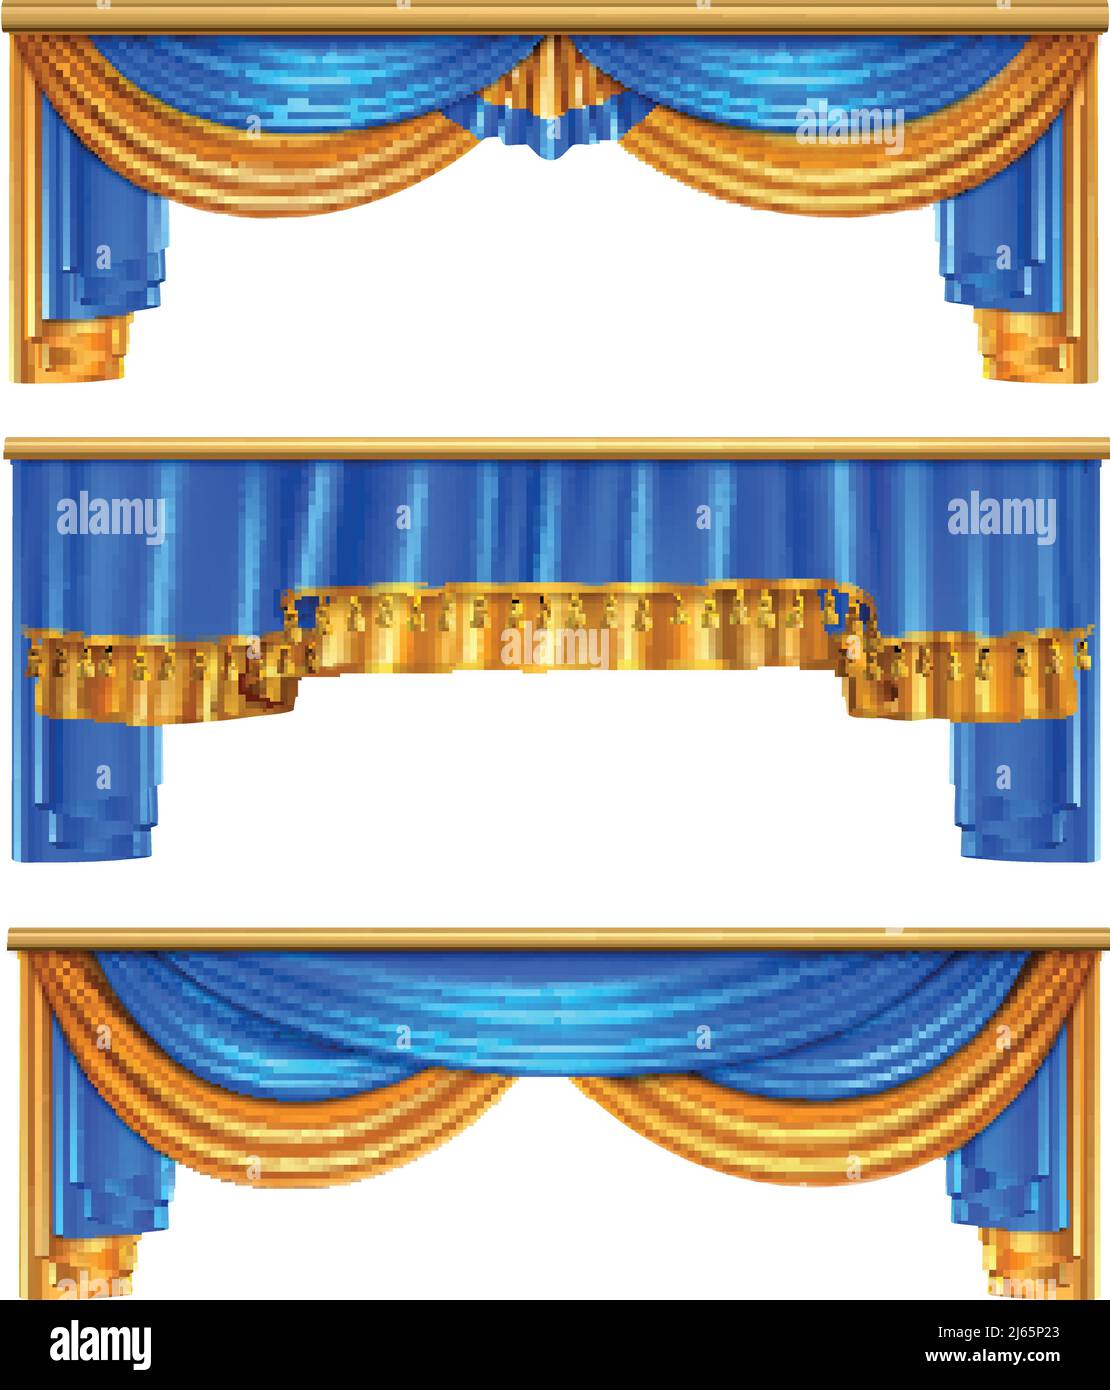 Ensemble complet de rideaux de luxe bleu doré 3 réaliste accueil décorations de fenêtre idées vecteur isolé illustration Illustration de Vecteur